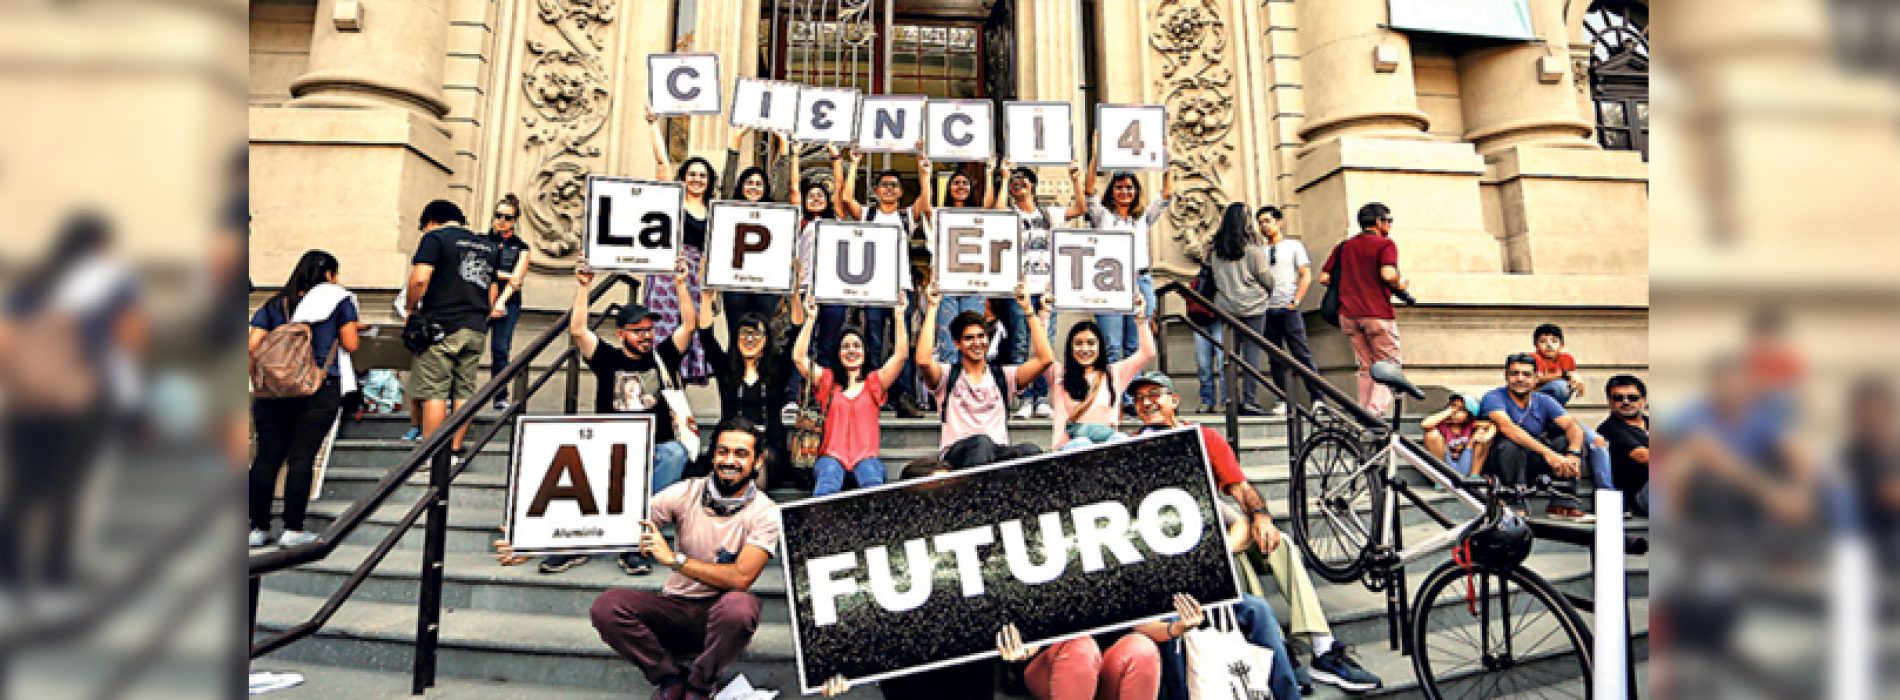 Más de dos mil doctorados en Chile están sin trabajo